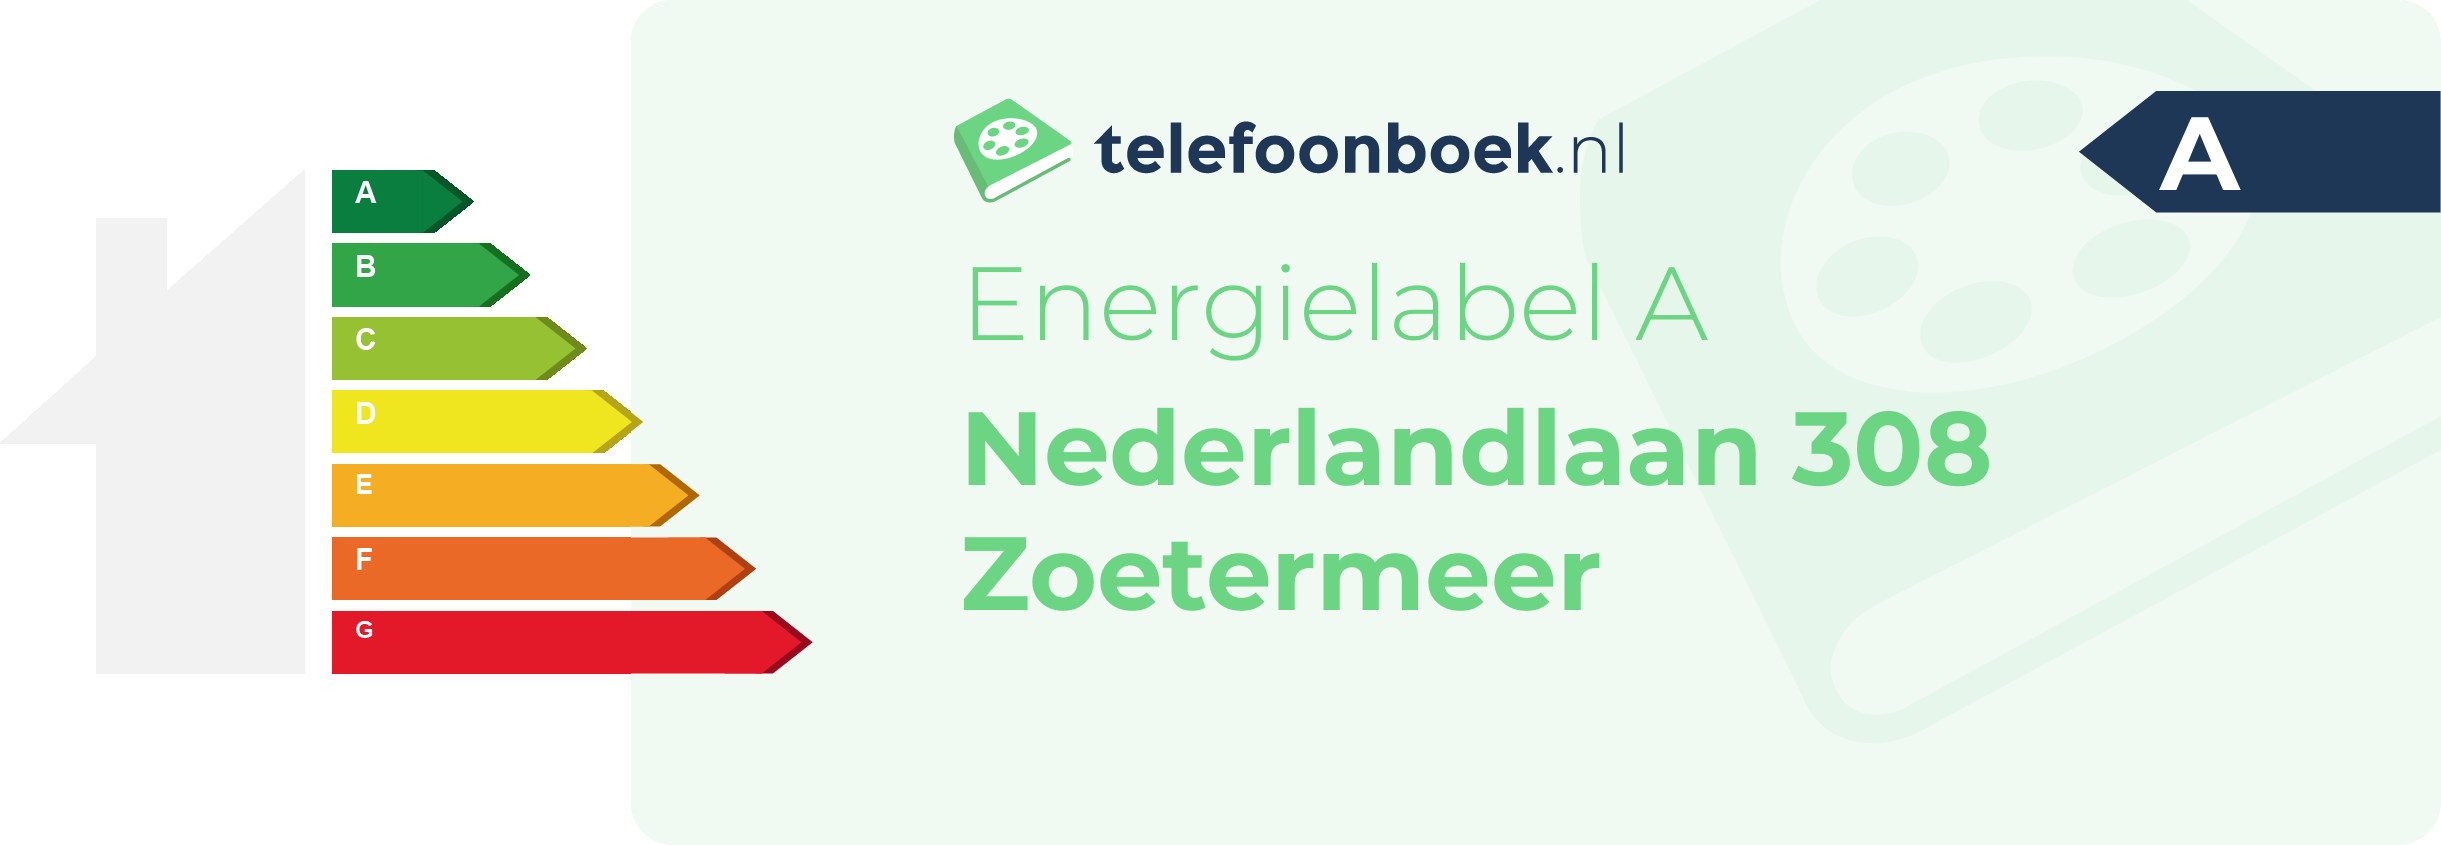 Energielabel Nederlandlaan 308 Zoetermeer